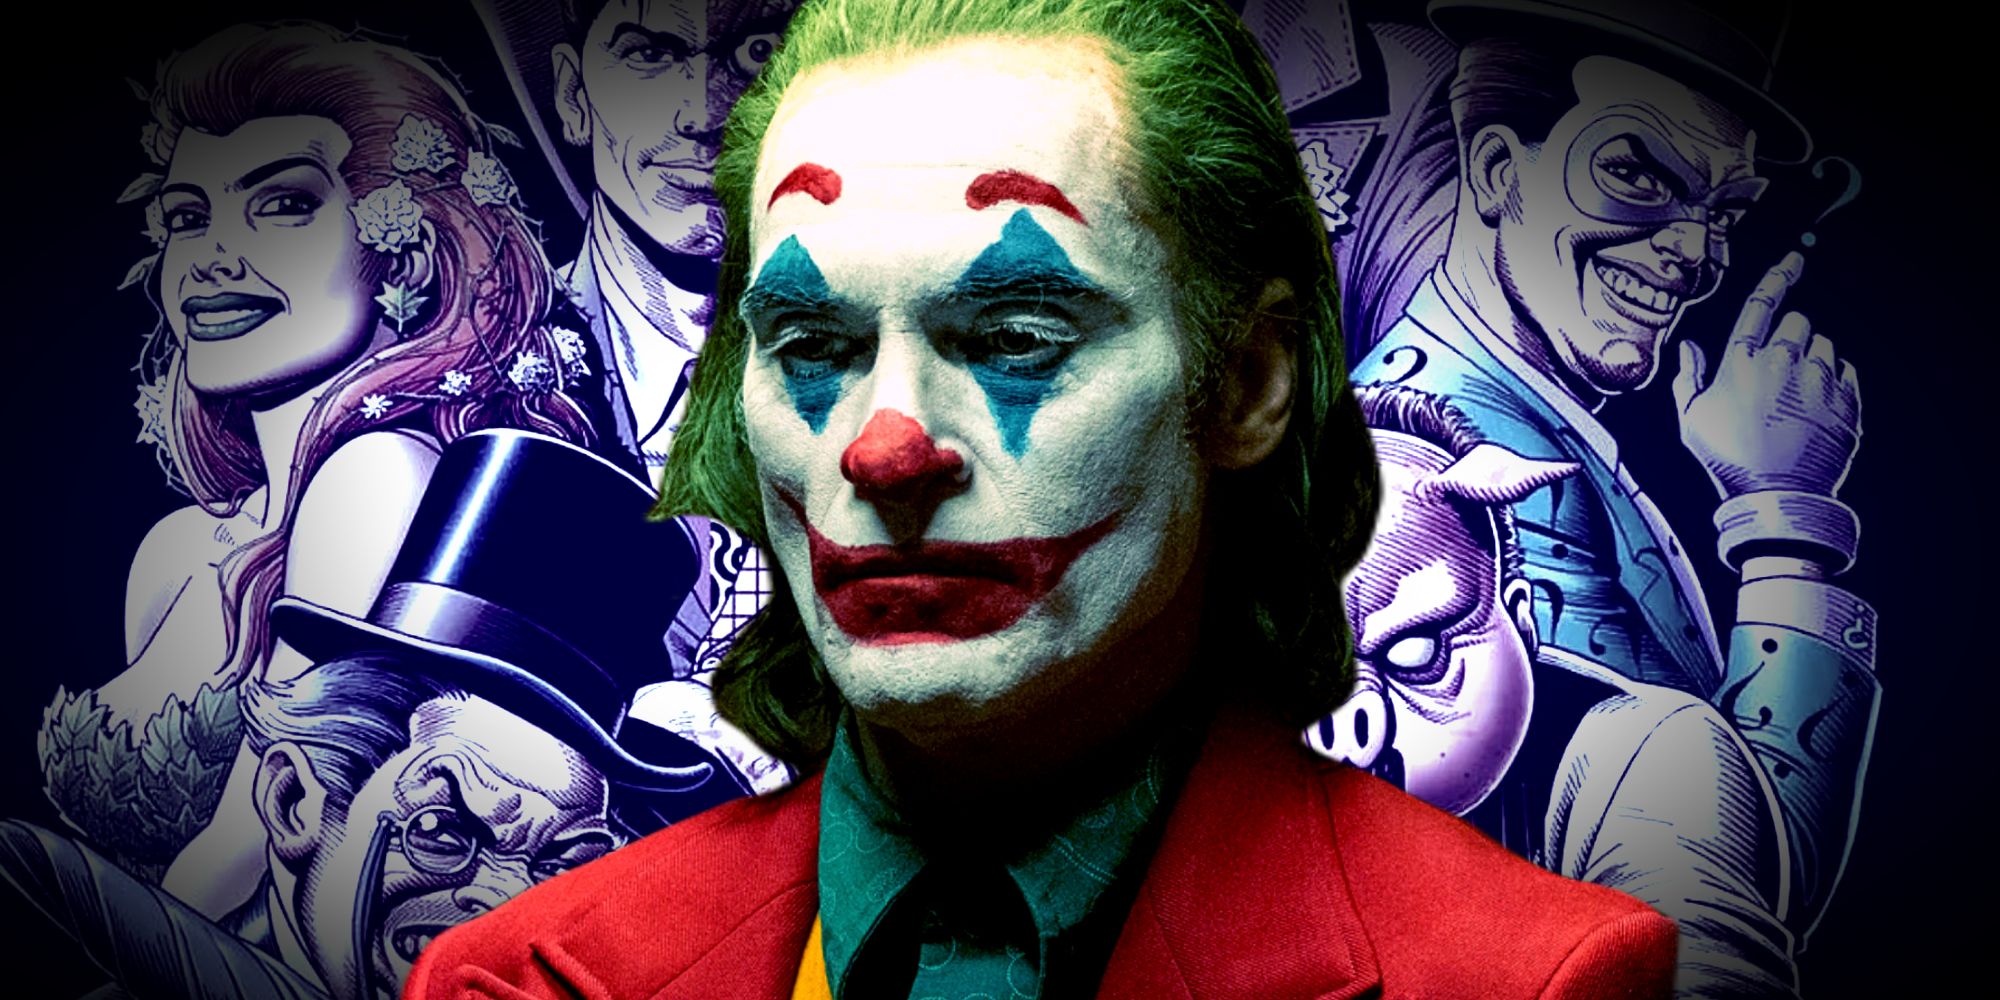 Joaquin Phoenix's Arthur Fleck in Joker standing in front of Batman's Rogue Gallery of Gotham Villains in DC Comics